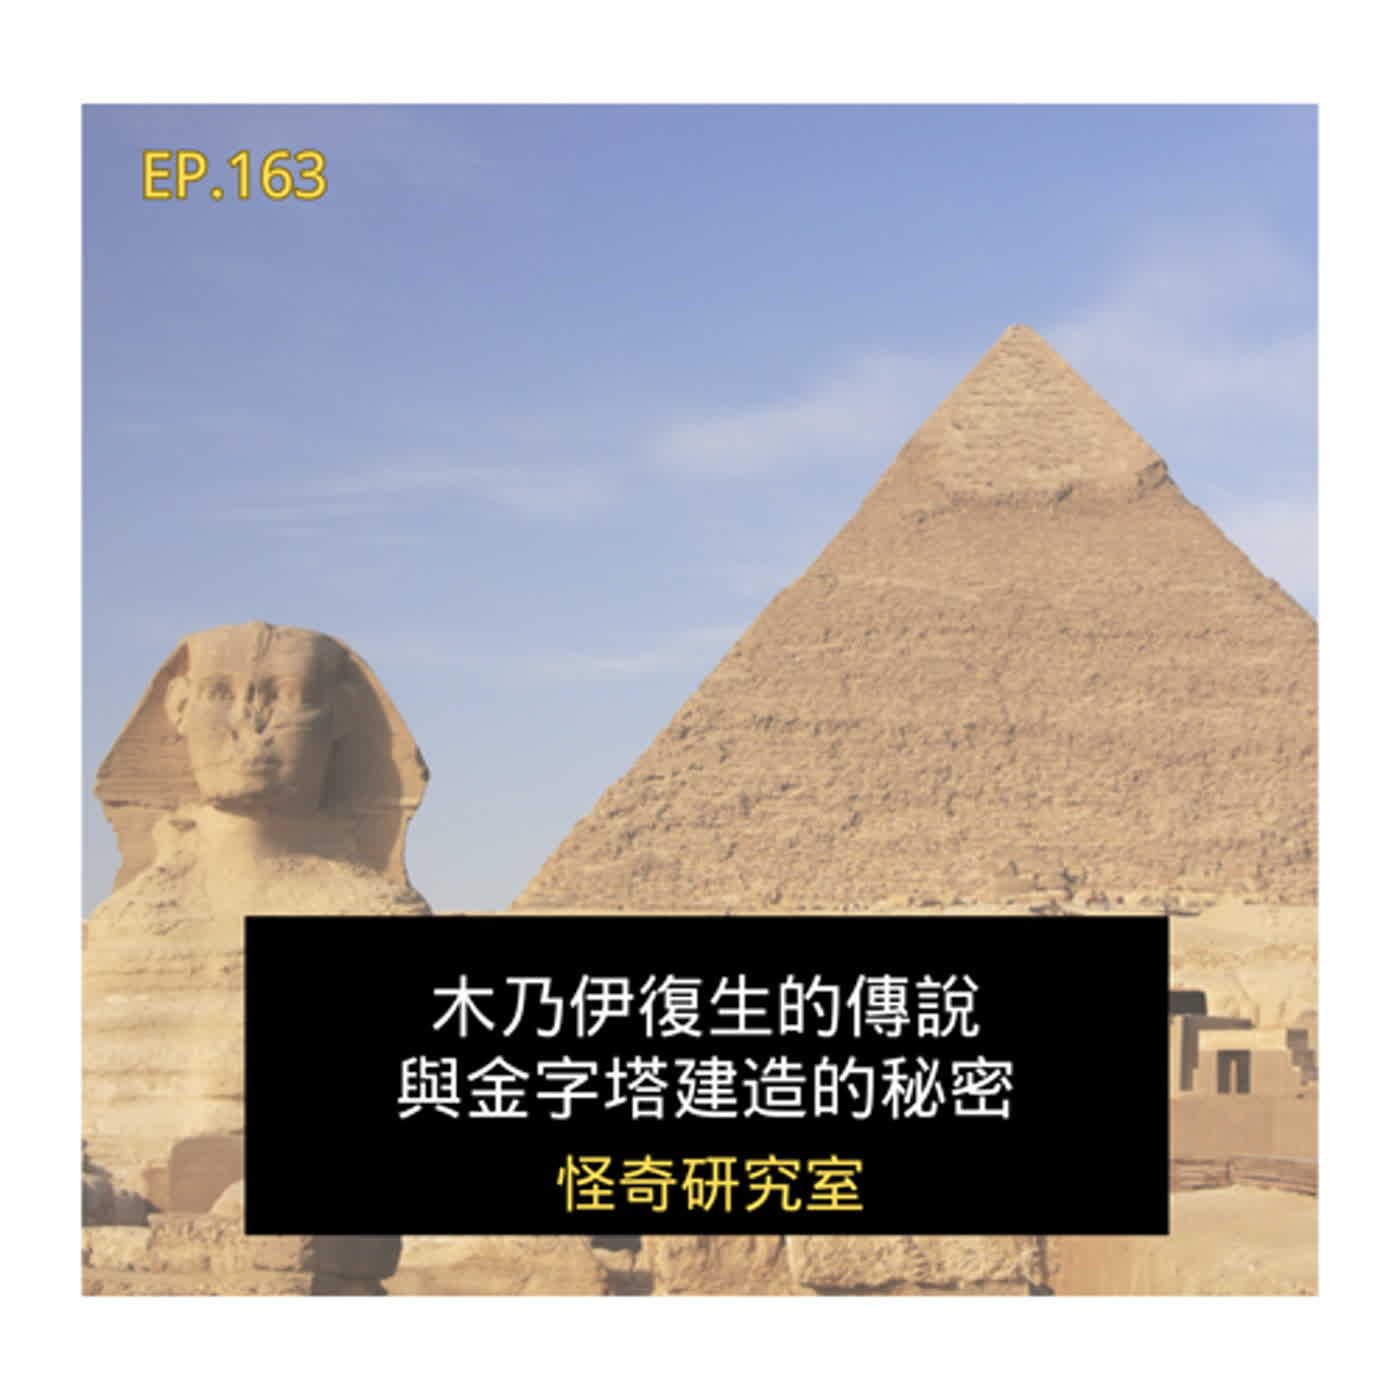 木乃伊復生的傳說與金字塔建造的秘密 - 這是「EP163」